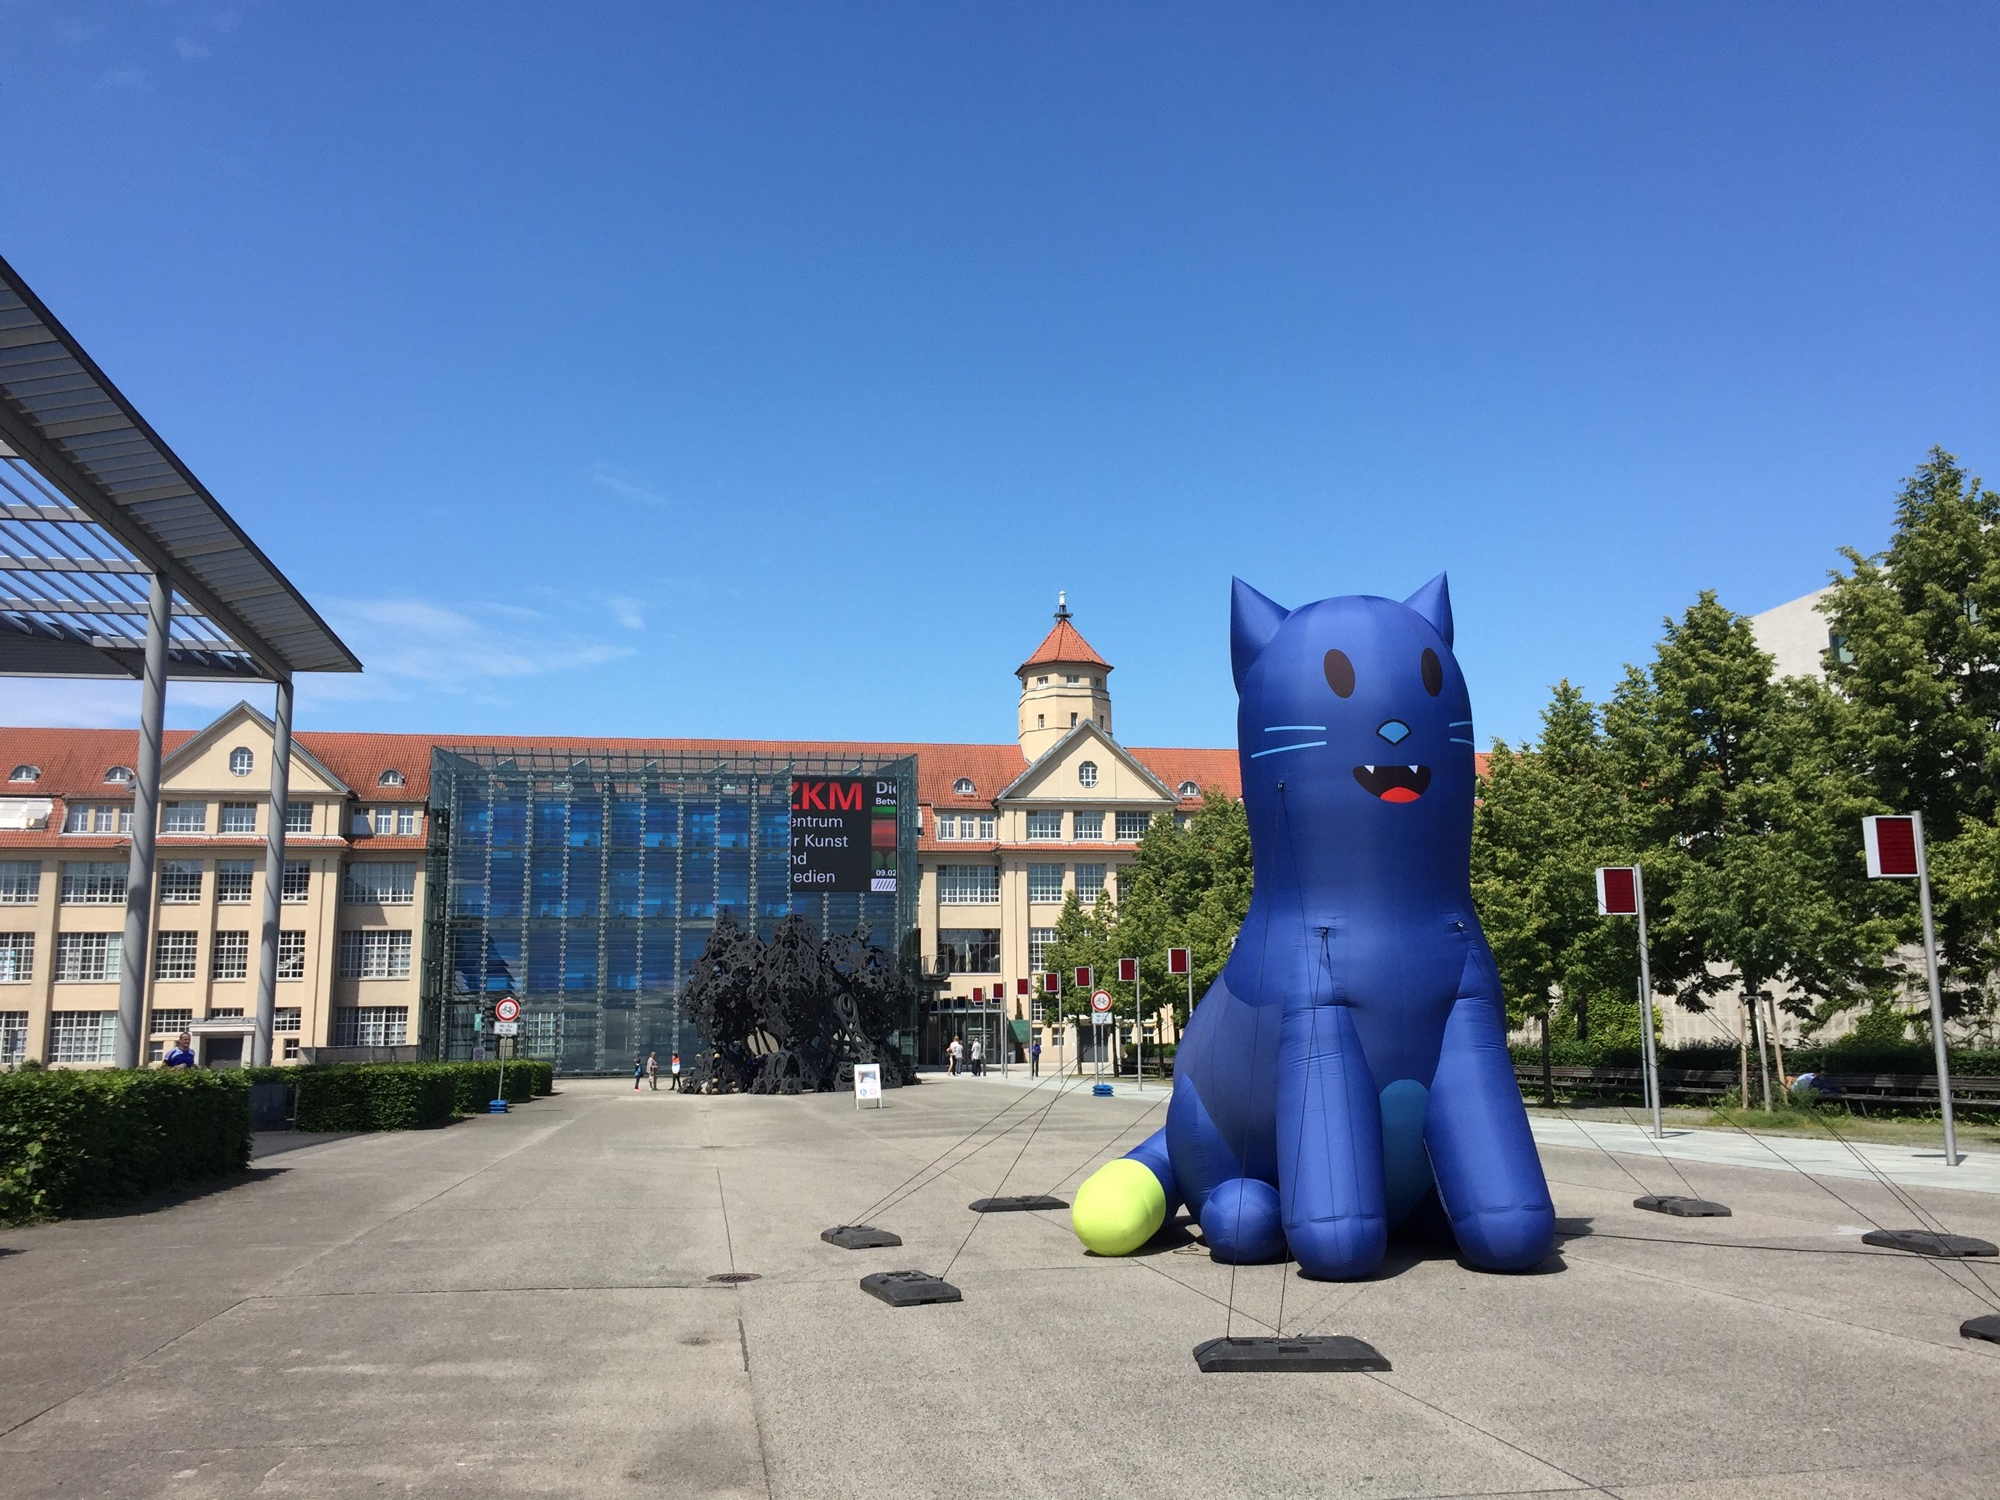 Blick auf das Zentrum für Kunst und Medien, im Vordergrund eine überlebensgroße aufgeblasene blaue Katze